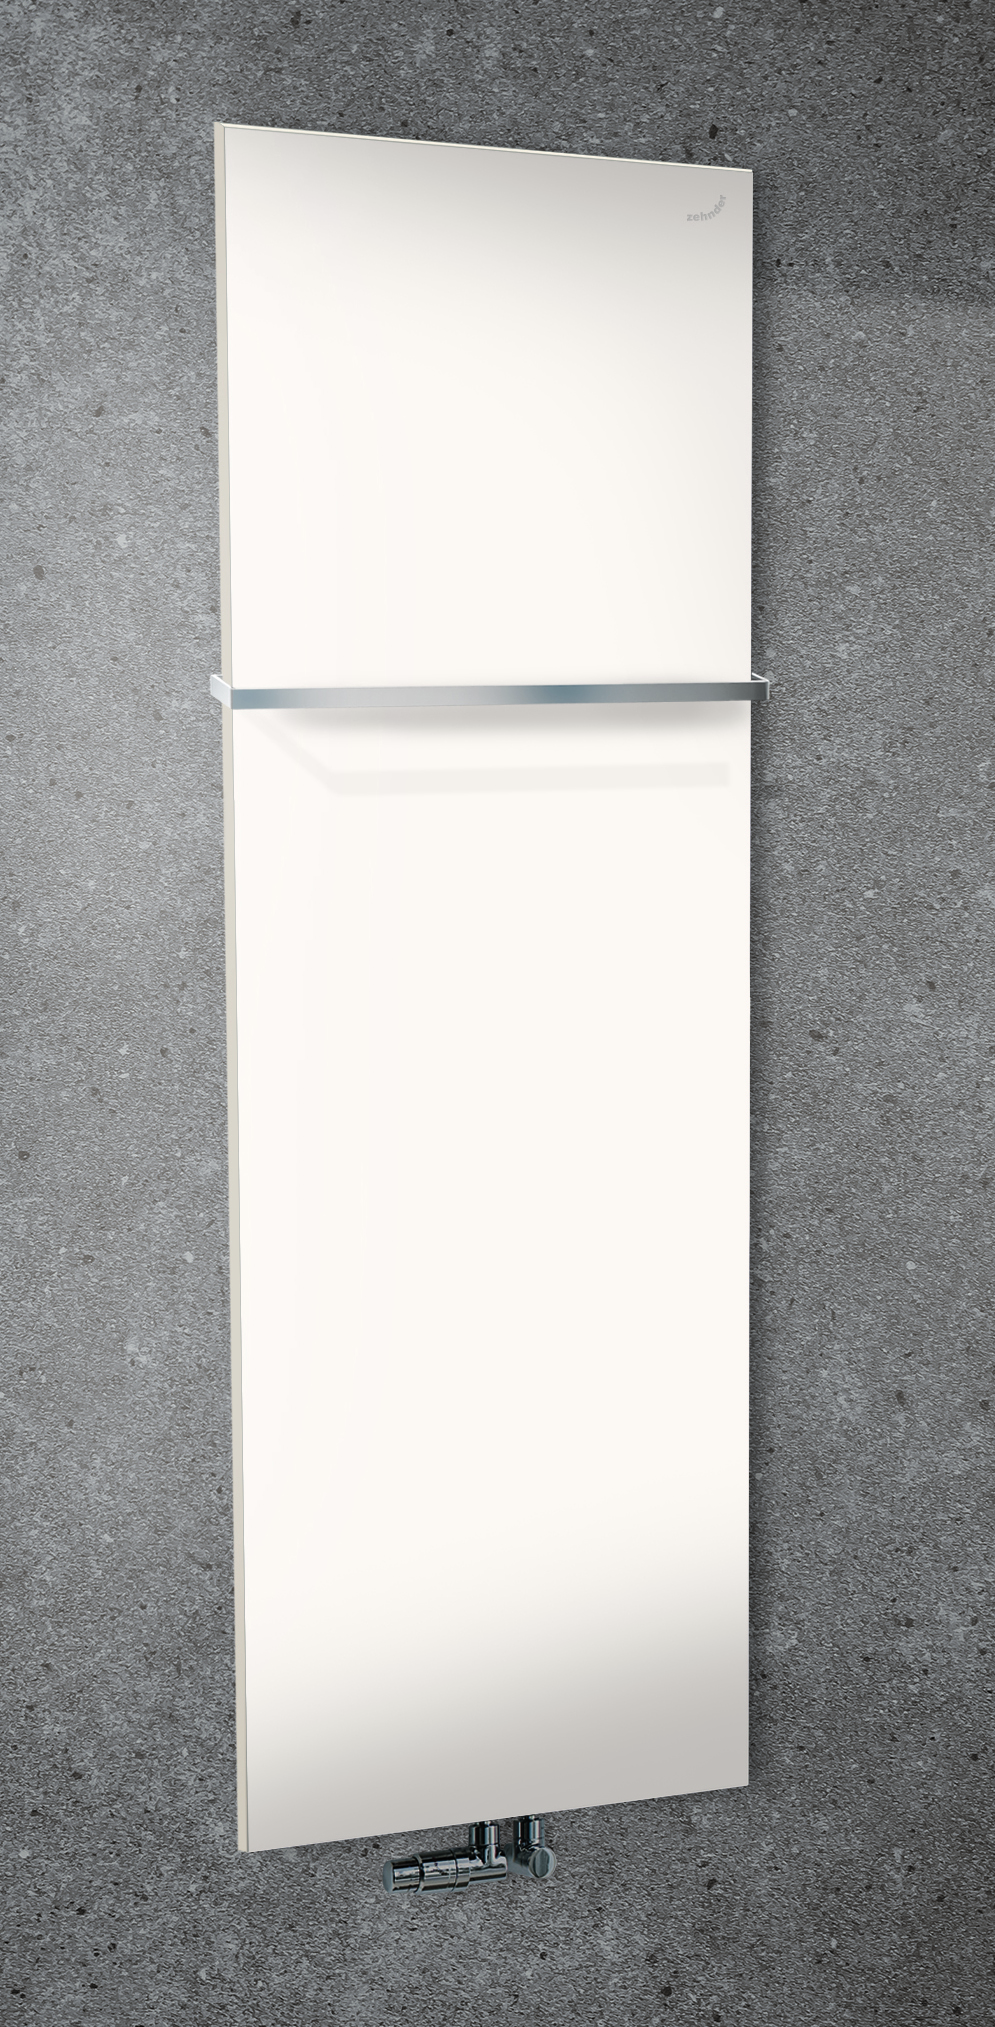 Zehnder Design-Heizkörper „Fina Lean Bar“ für Warmwasser-Zentralheizung mit 50 mm-Mittelanschluss 60 × 130 cm in Verkehrsweiß (RAL 9016, glänzend)